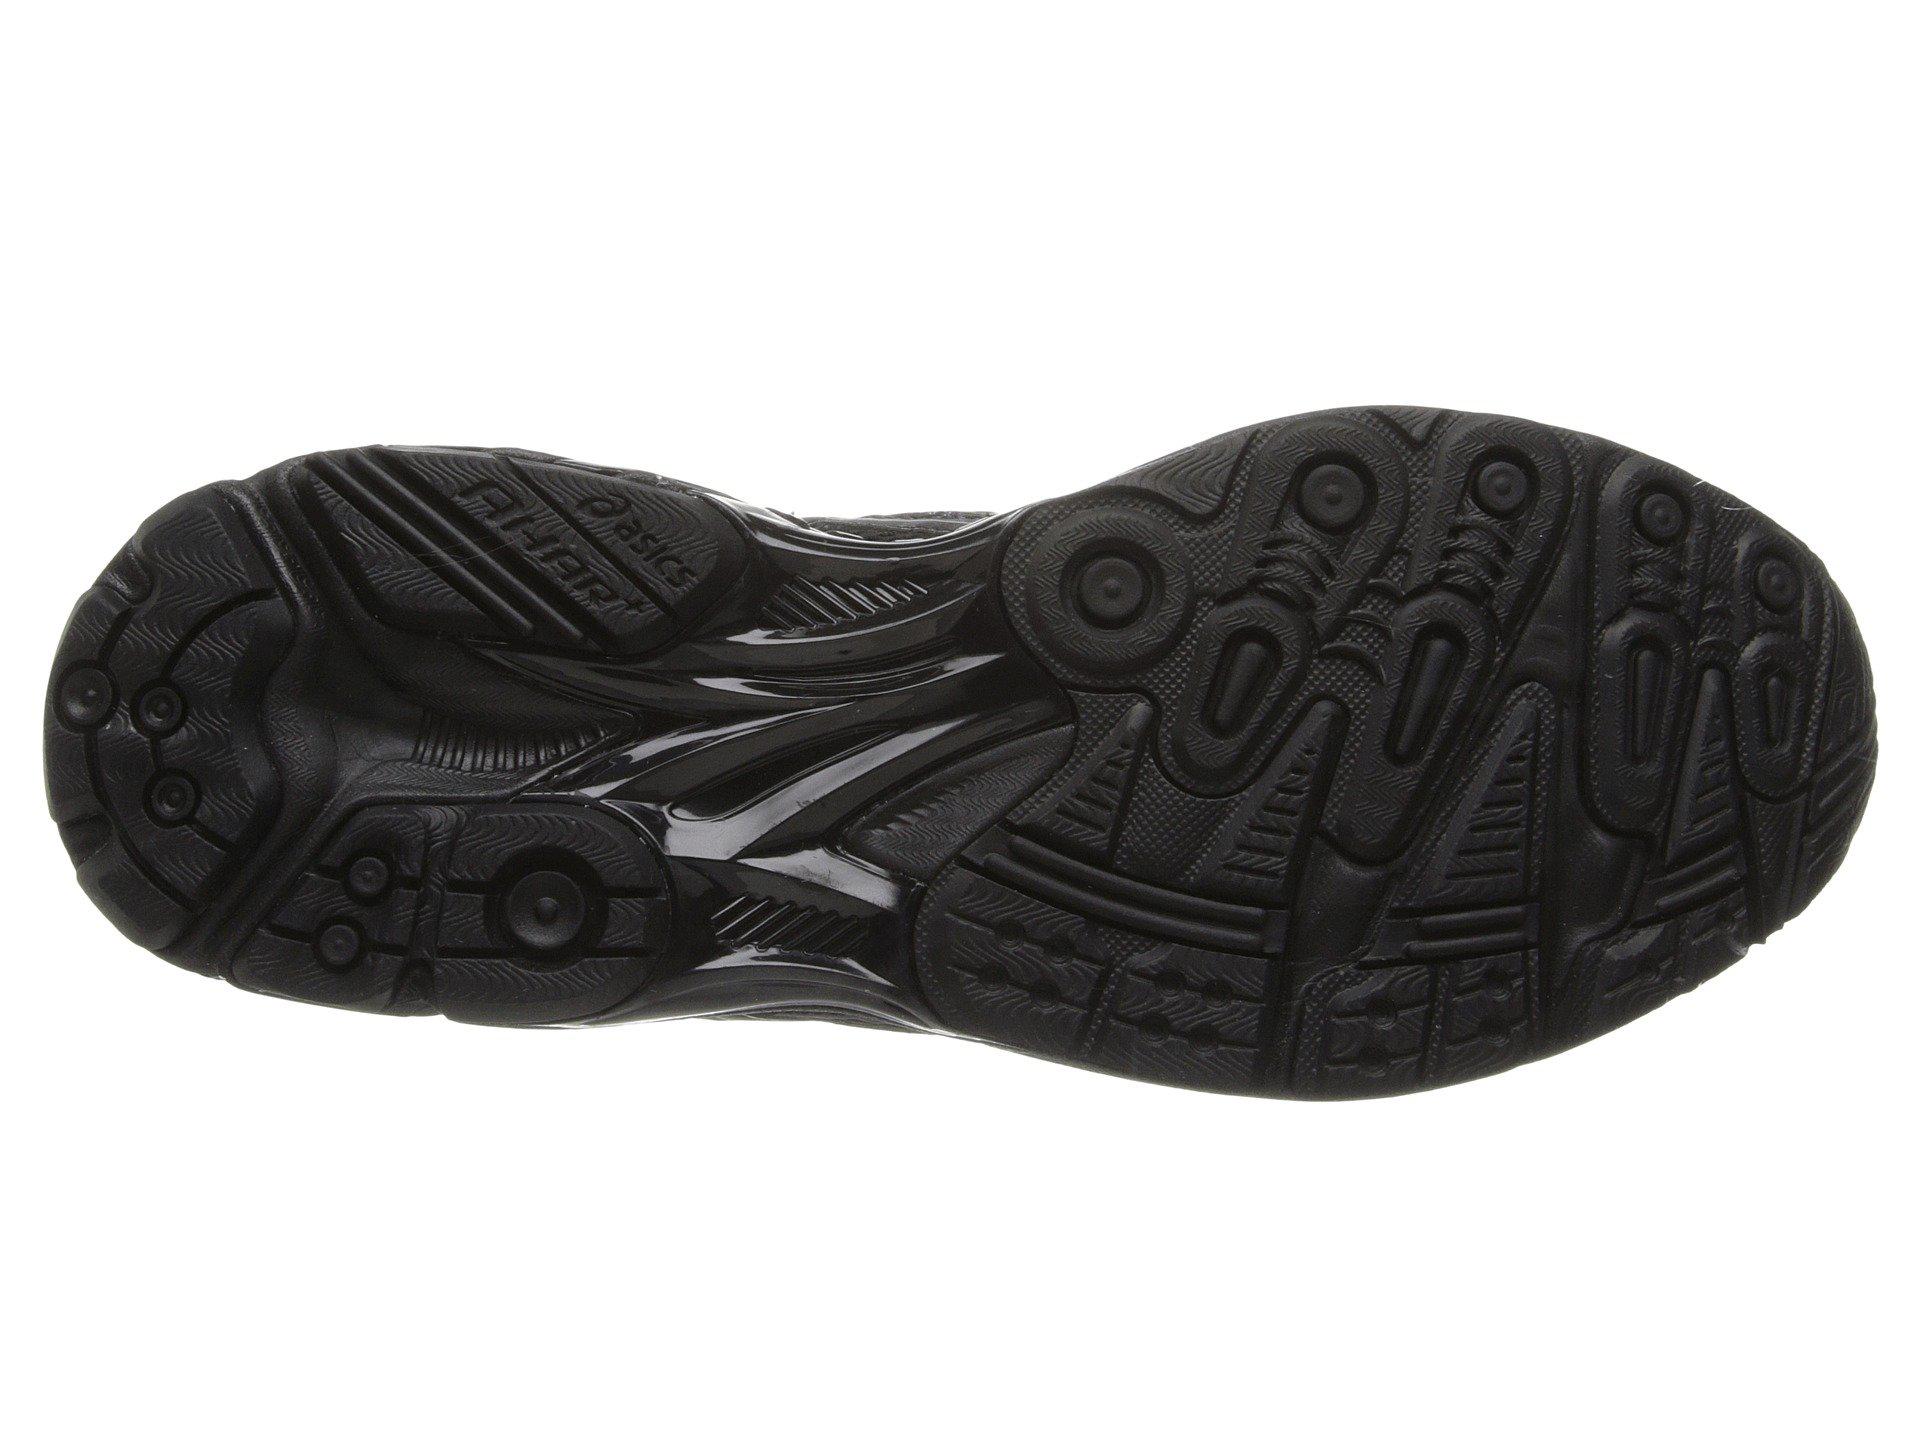 Asics Synthetic Gel-tech Walker Neo 4 Walking Shoe in Black/Black/Silver  (Black) for Men - Lyst